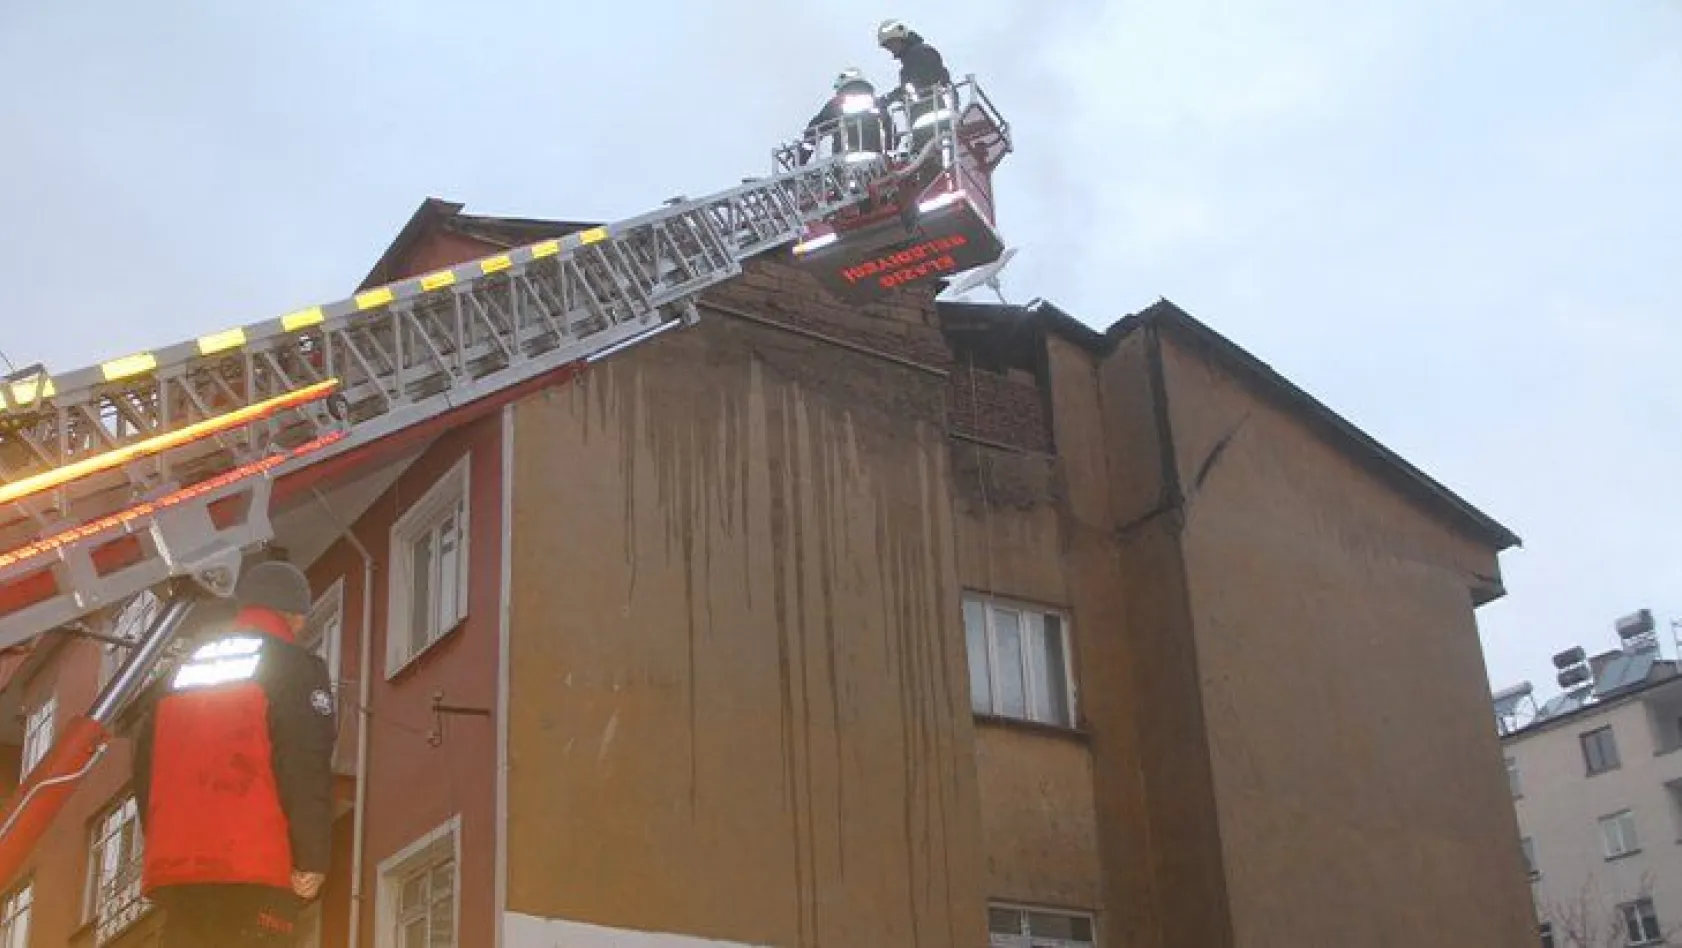 4 katlı binanın çatısında yangın